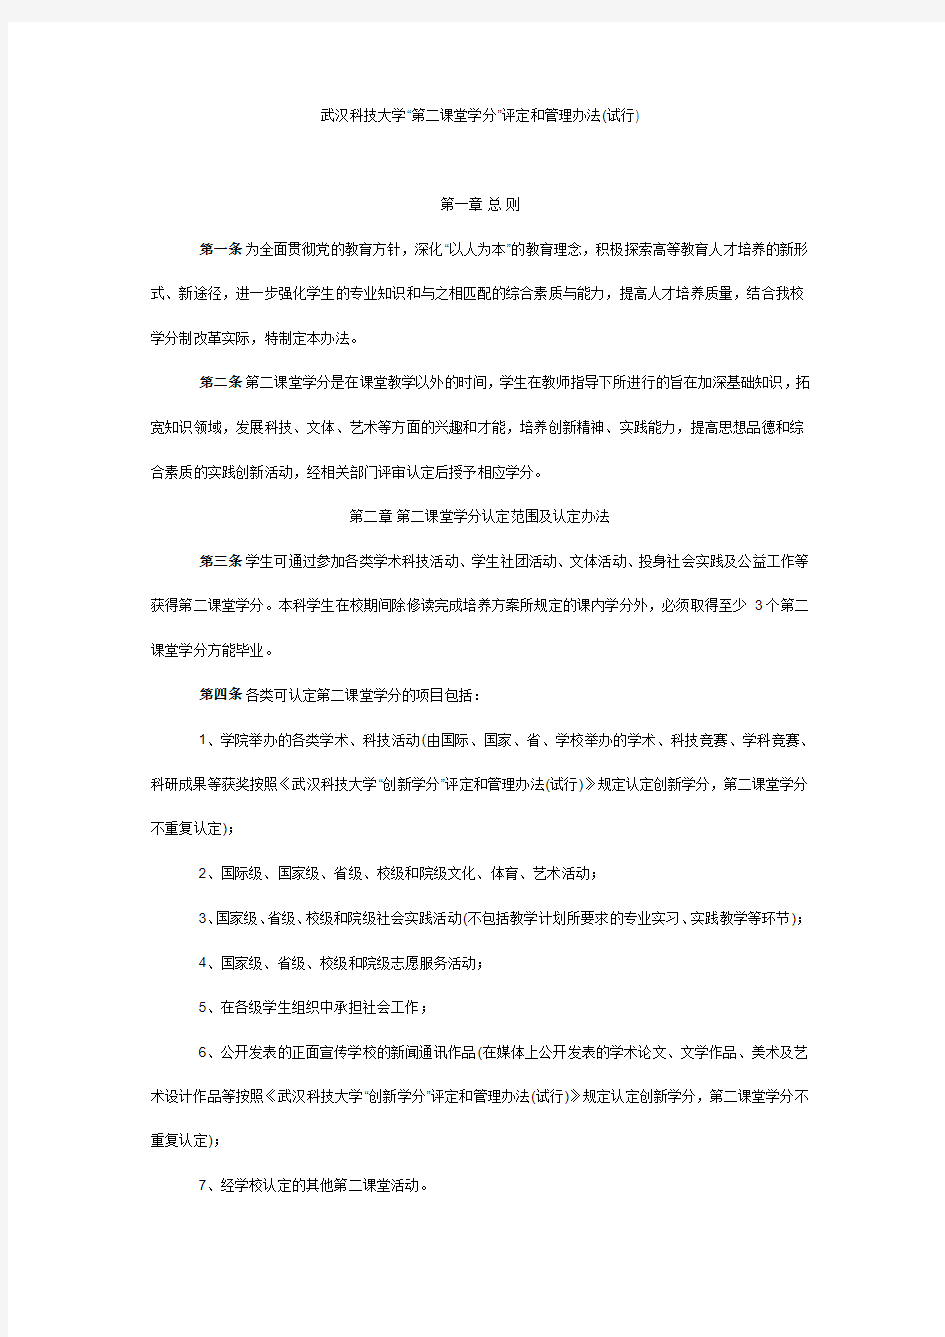 武汉科技大学“第二课堂”文件及评分细则